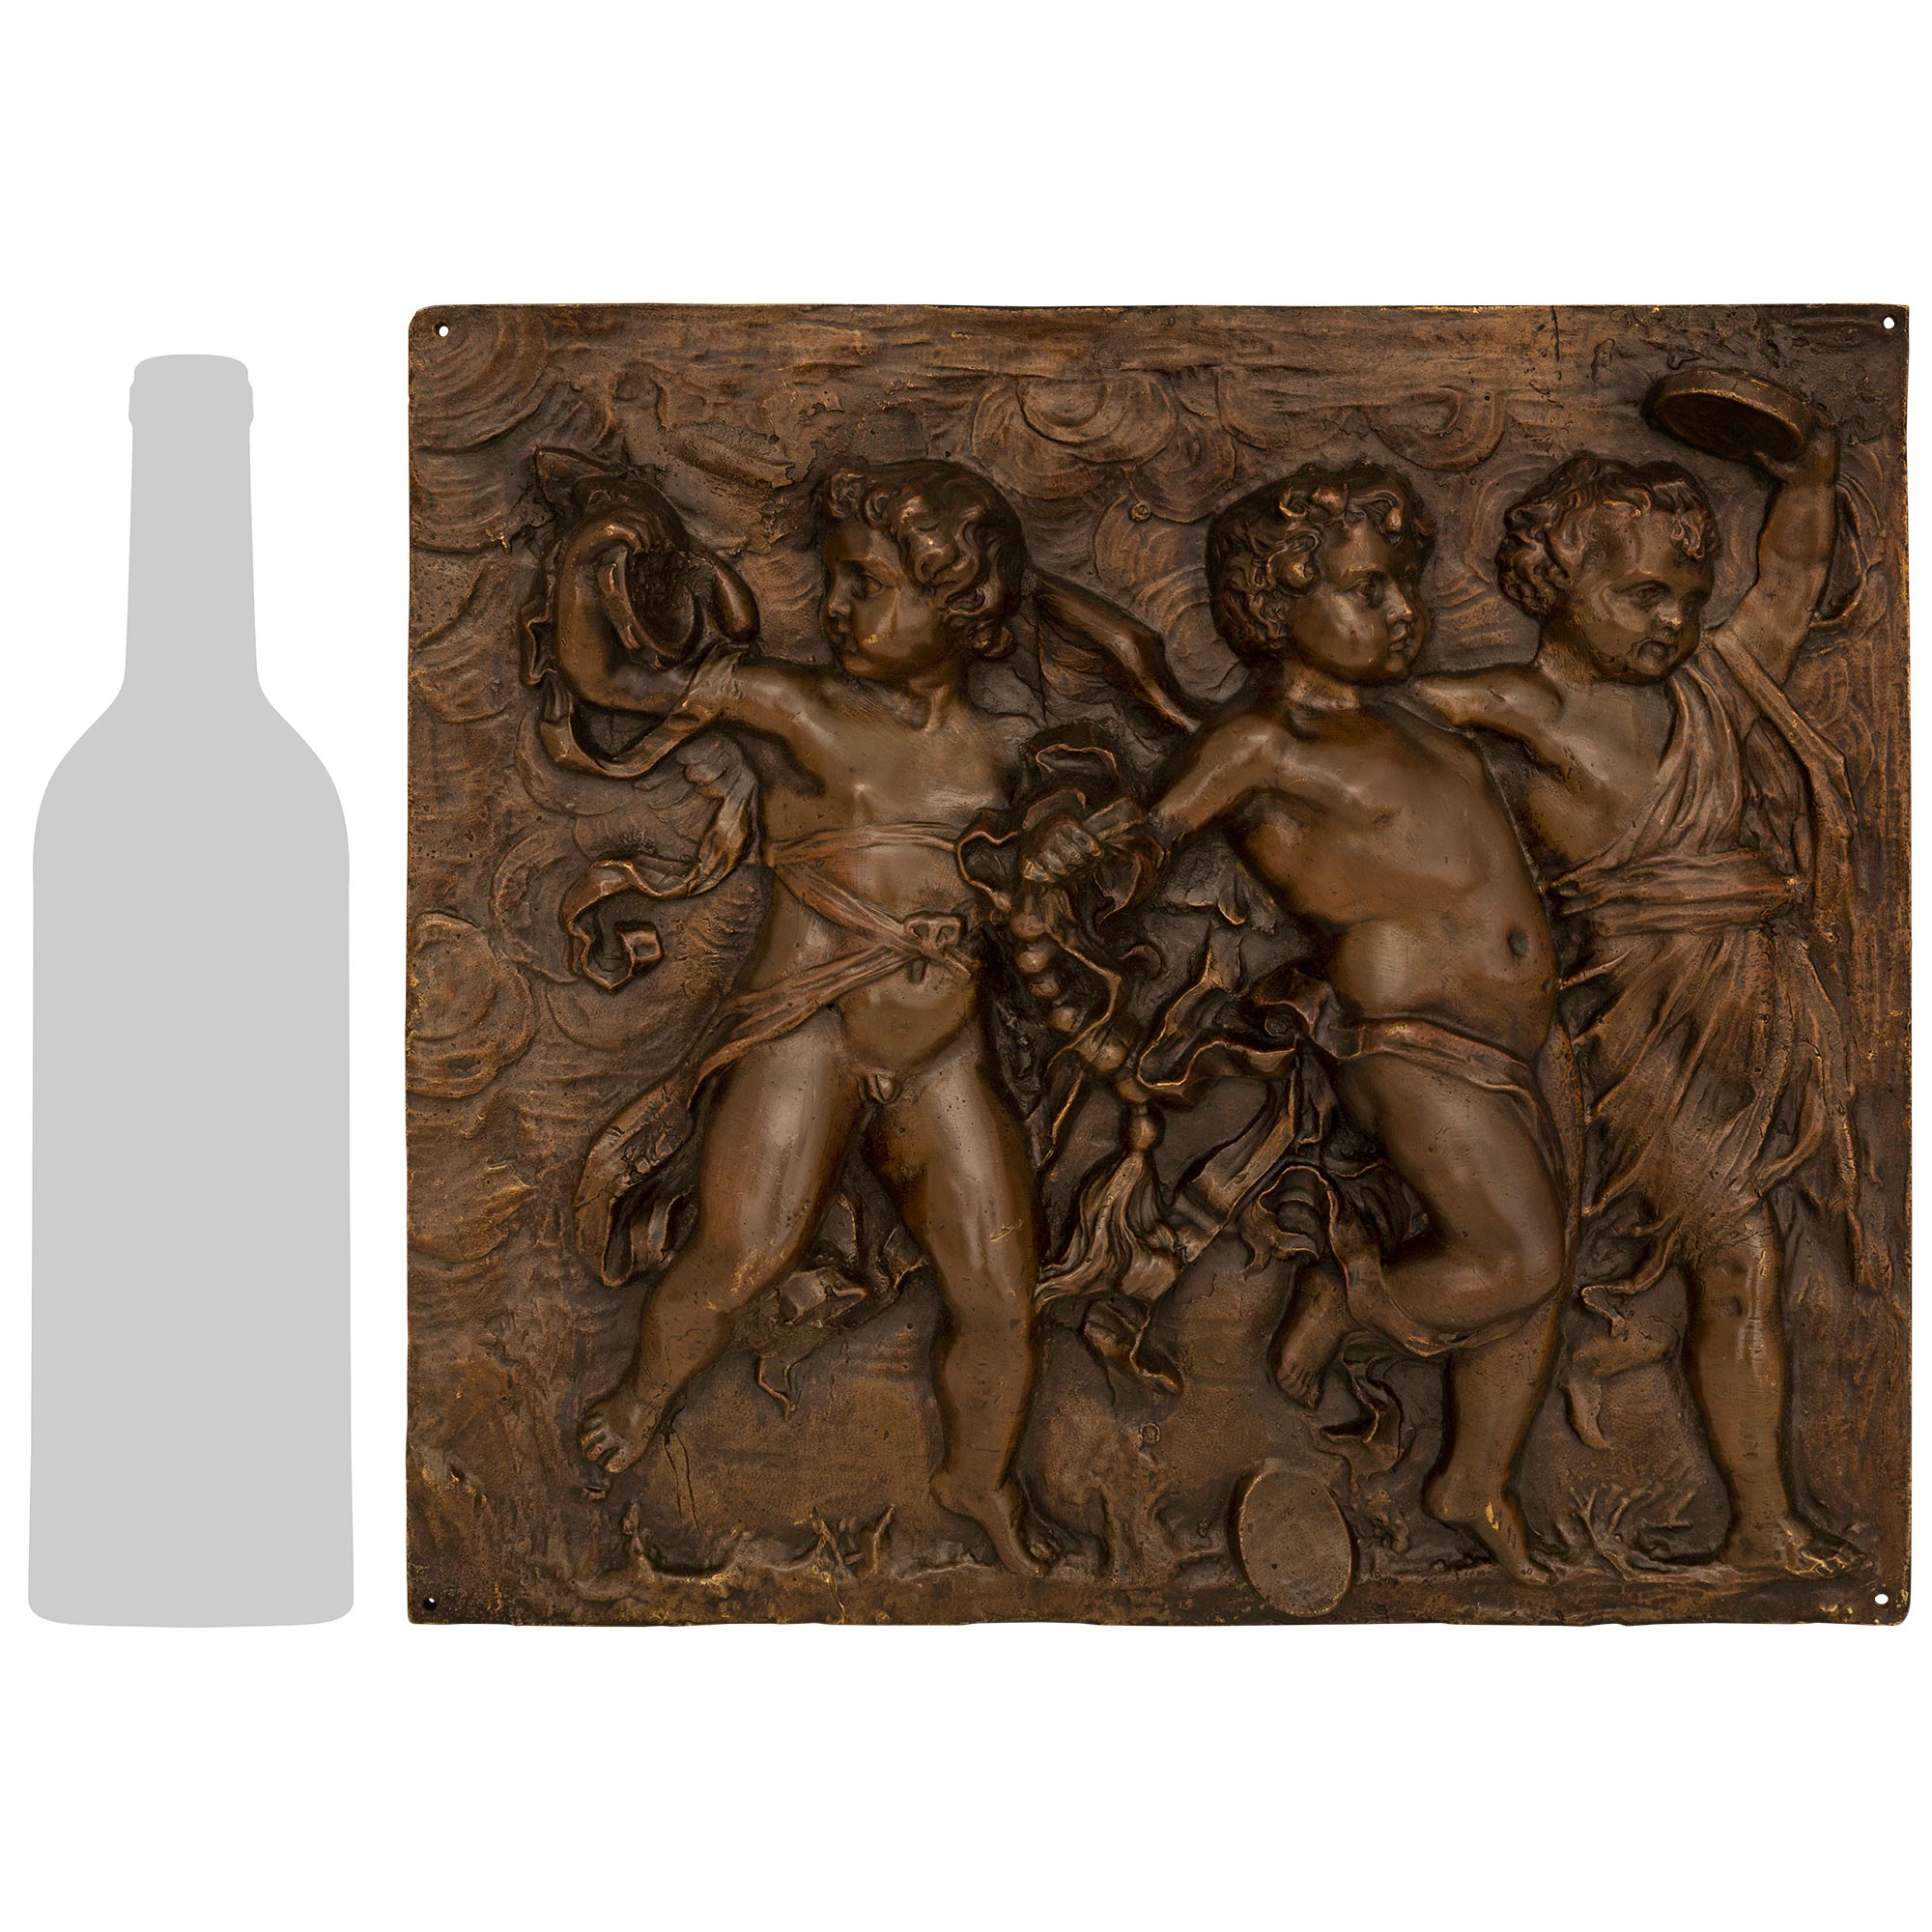 Ein bezauberndes und äußerst dekoratives Paar französischer Wandtafeln aus patinierter Bronze des 19. Jahrhunderts in der Art von Clodion. Jede rechteckige Plakette zeigt bezaubernde geflügelte Putten, die in wundervoll fließende Bänder und Gewänder